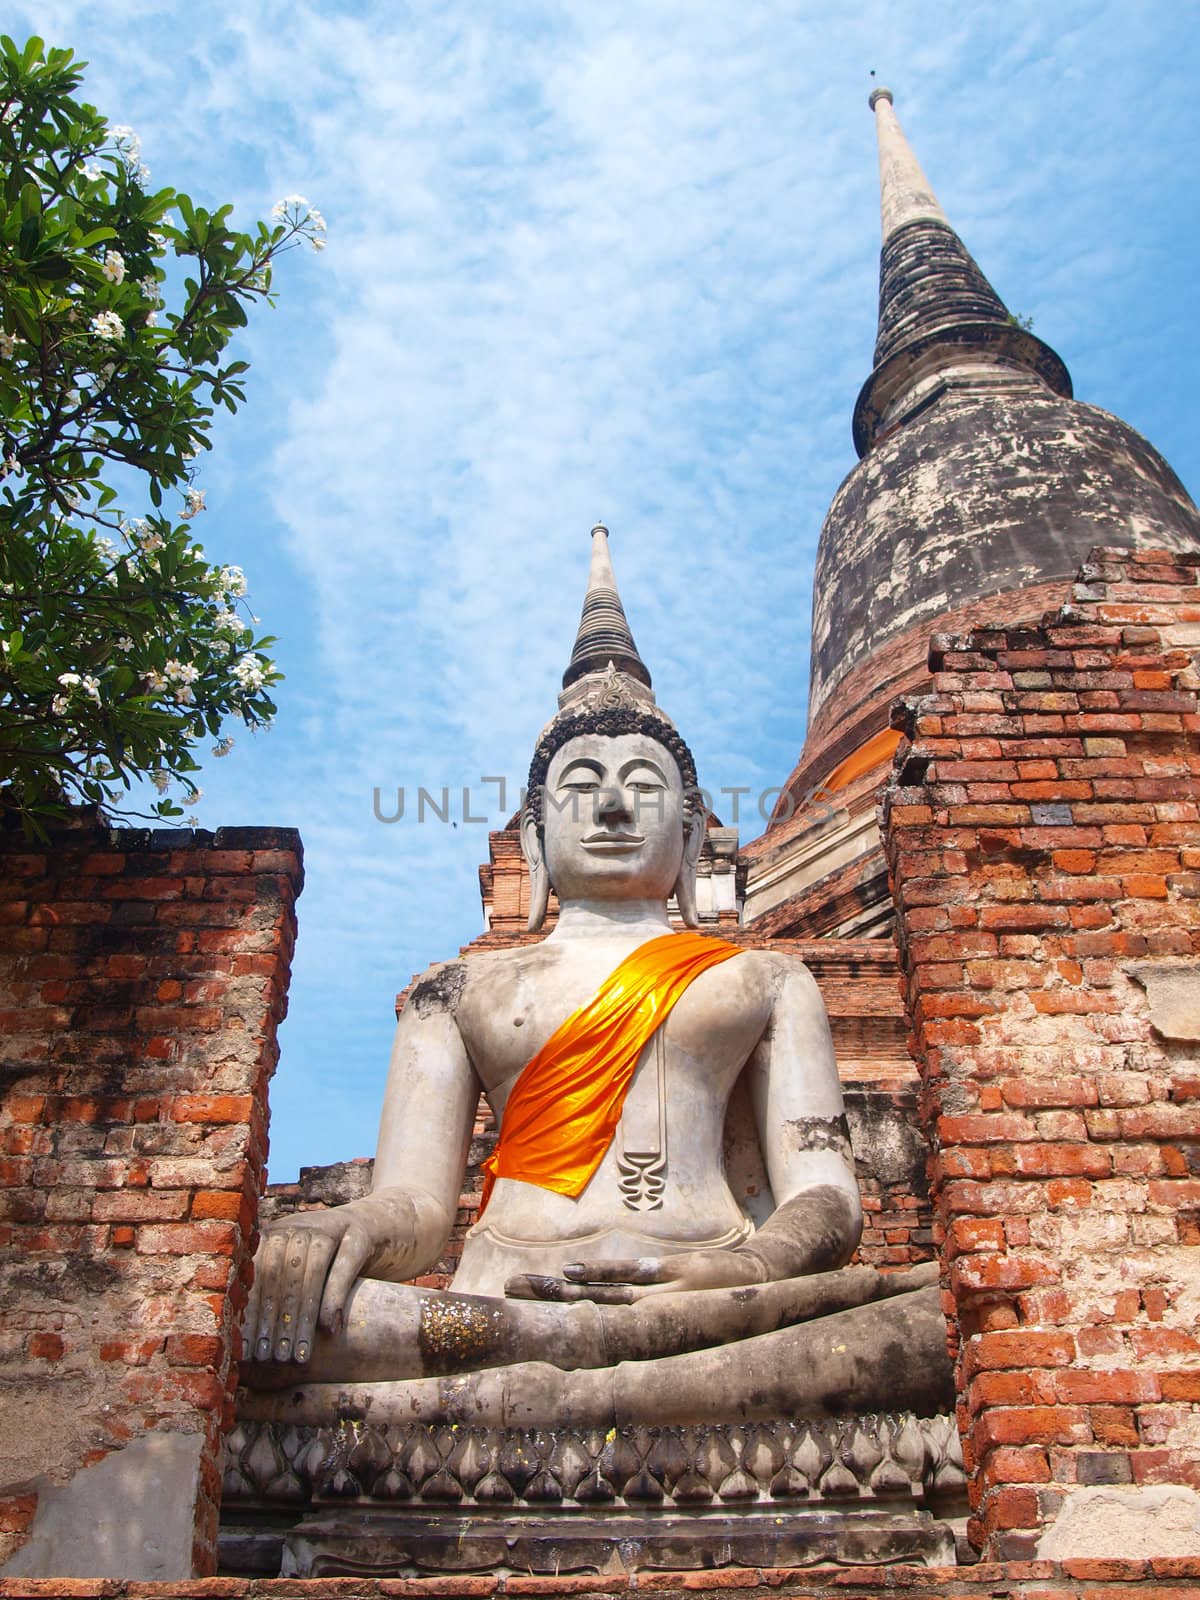 Buddha statue in Wat Yai Chai Mongkol- Ayuttaya of Thailand by jakgree